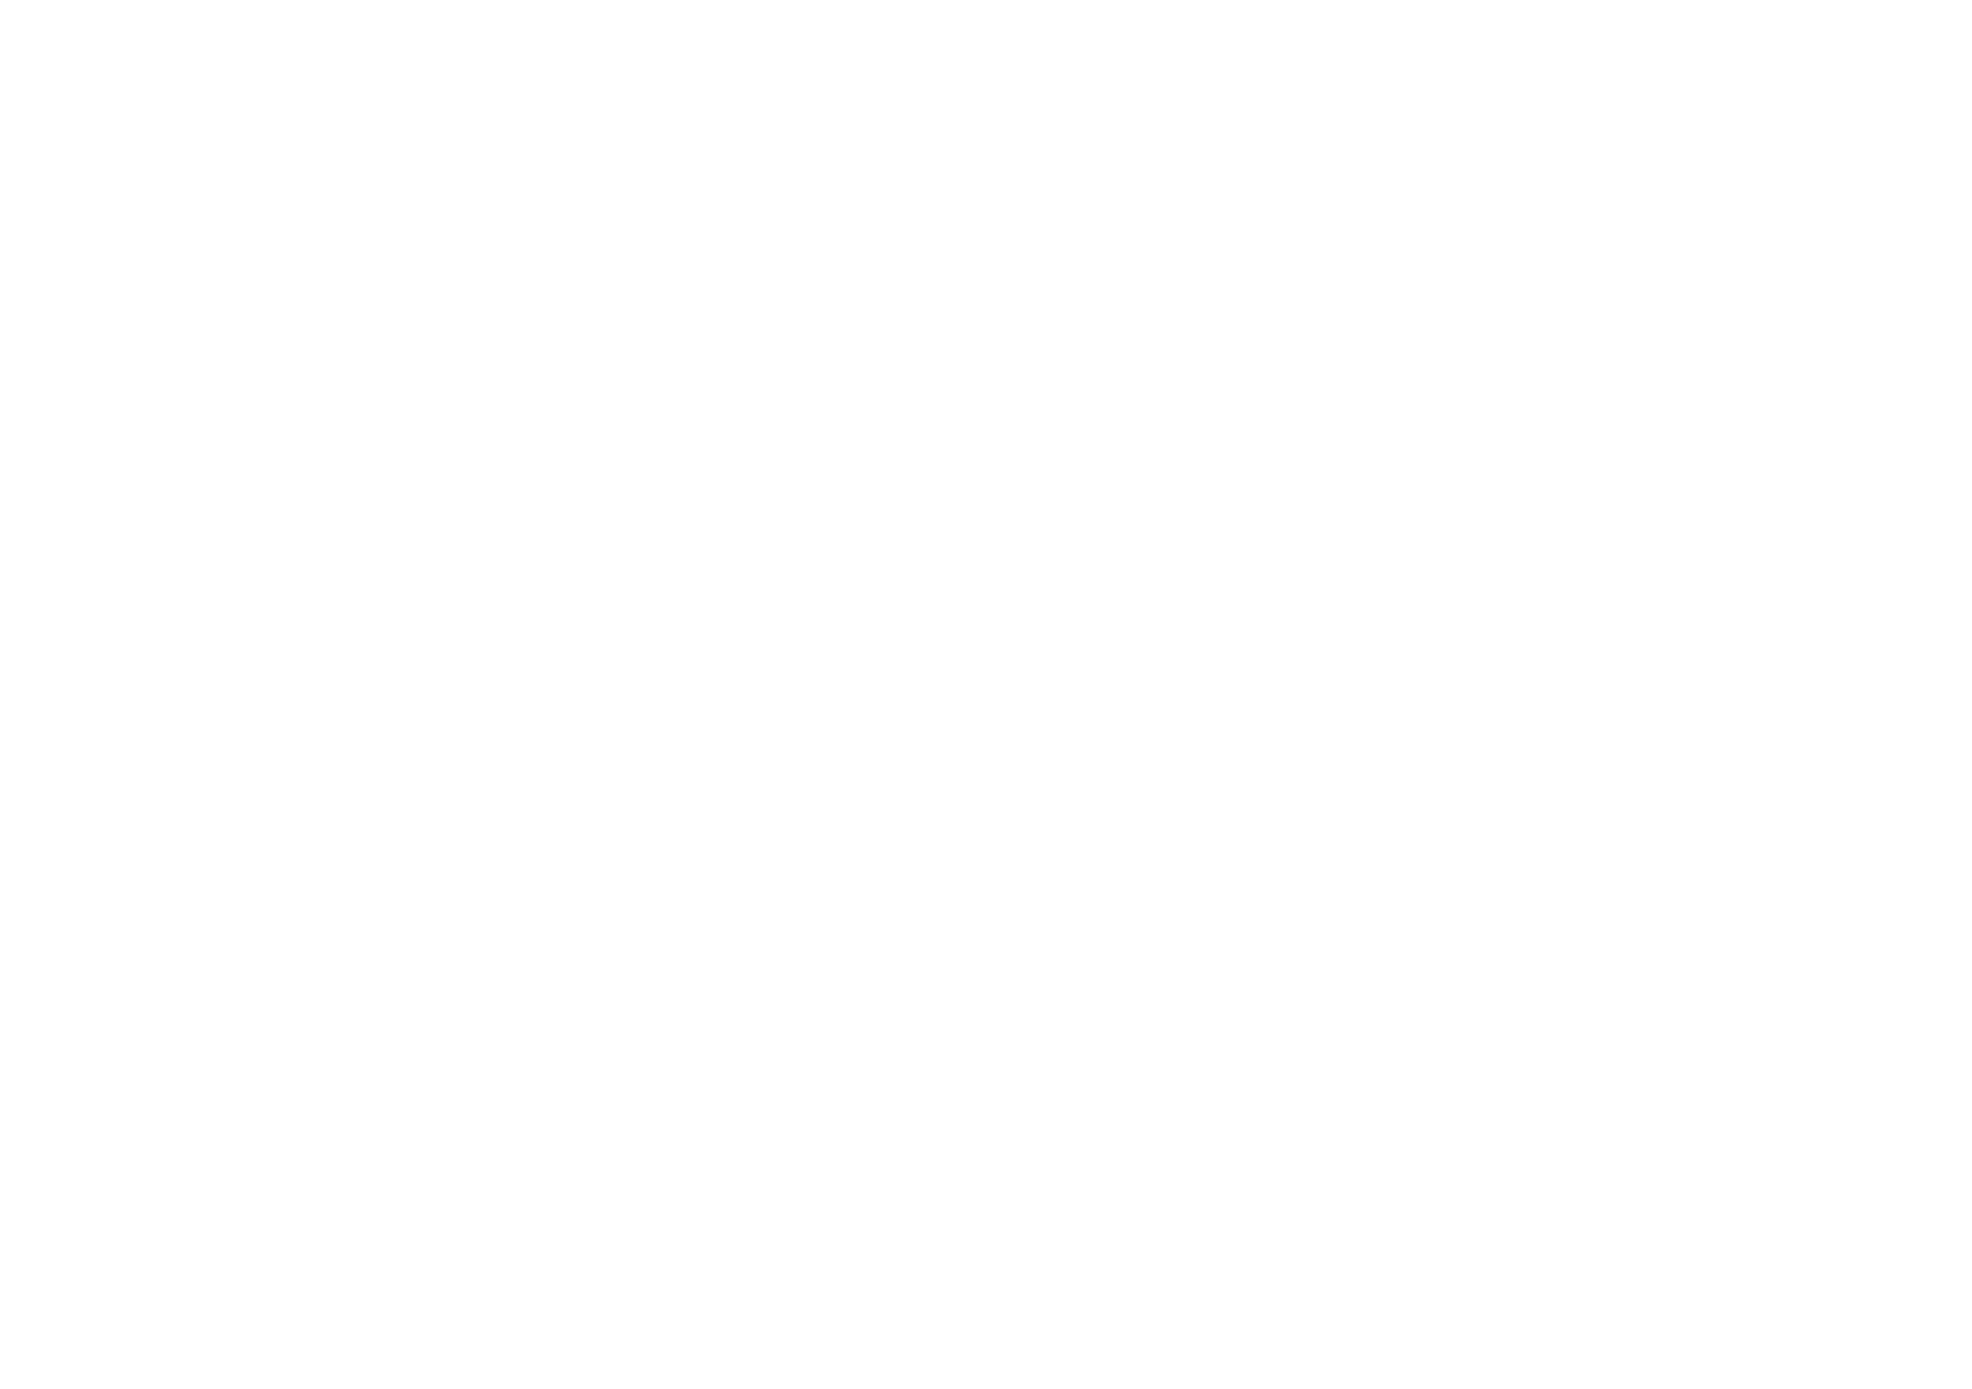 Resurj logo in white